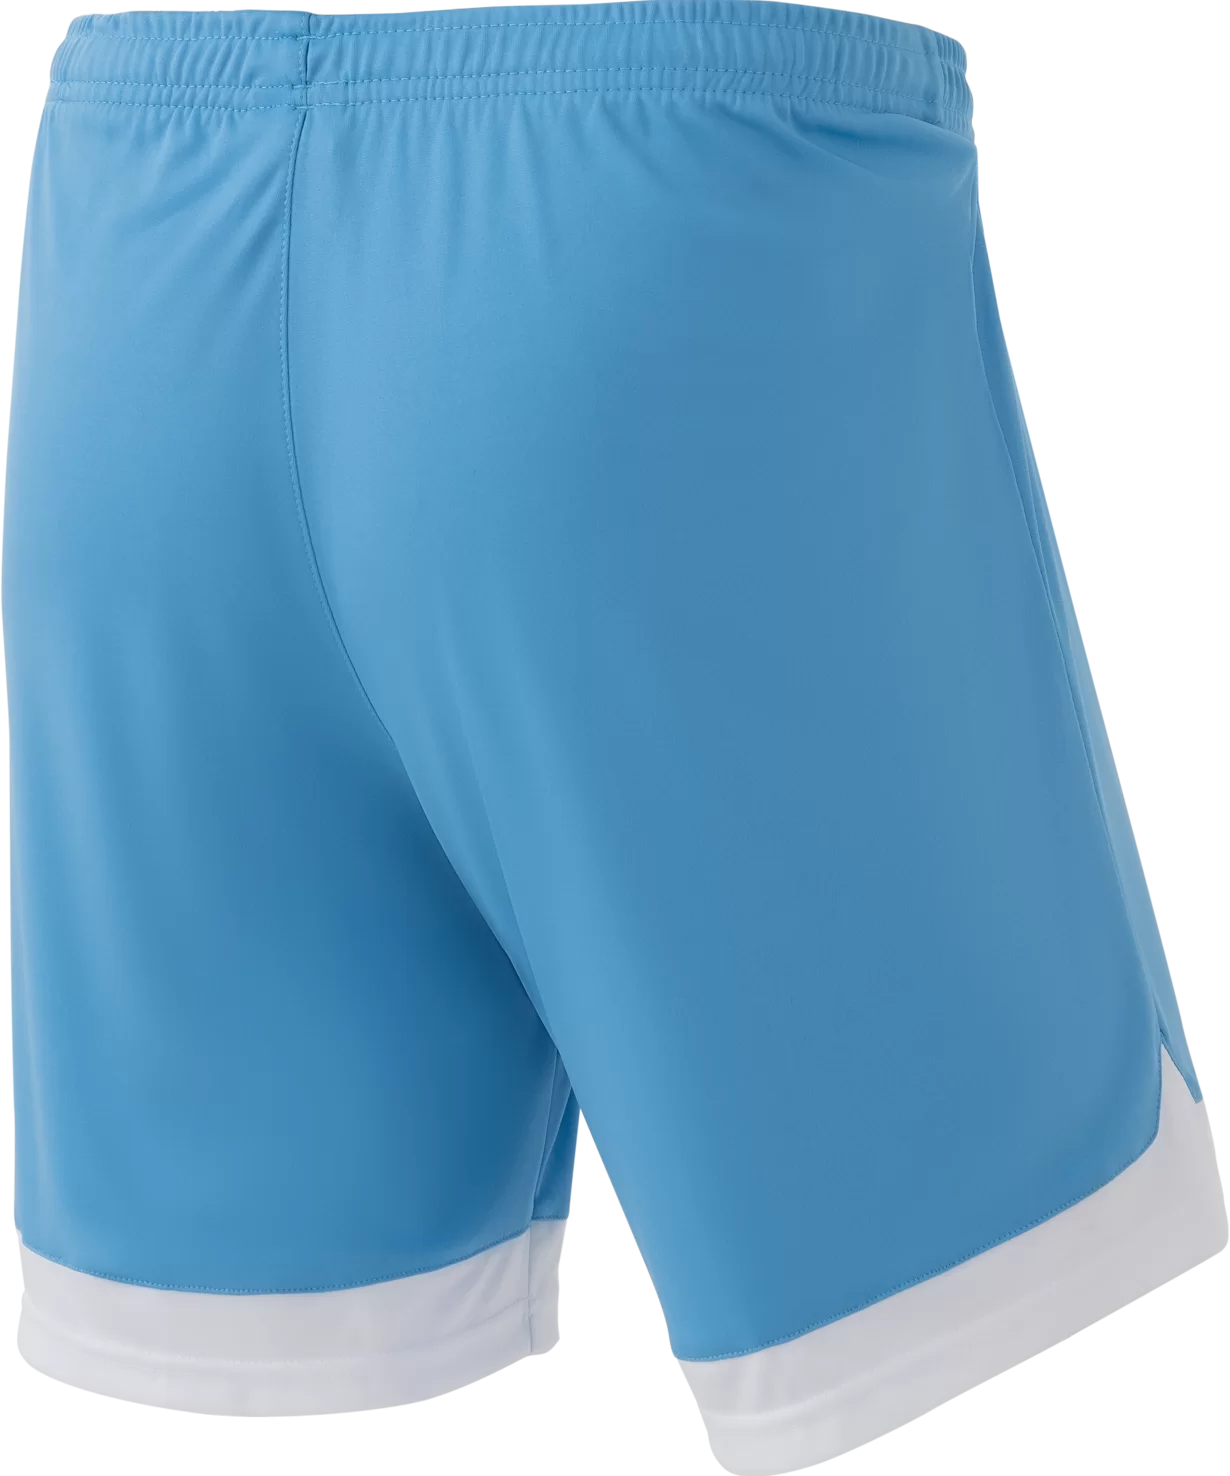 Фото Шорты игровые DIVISION PerFormDRY Union Shorts, голубой/белый/белый Jögel со склада магазина СпортЕВ